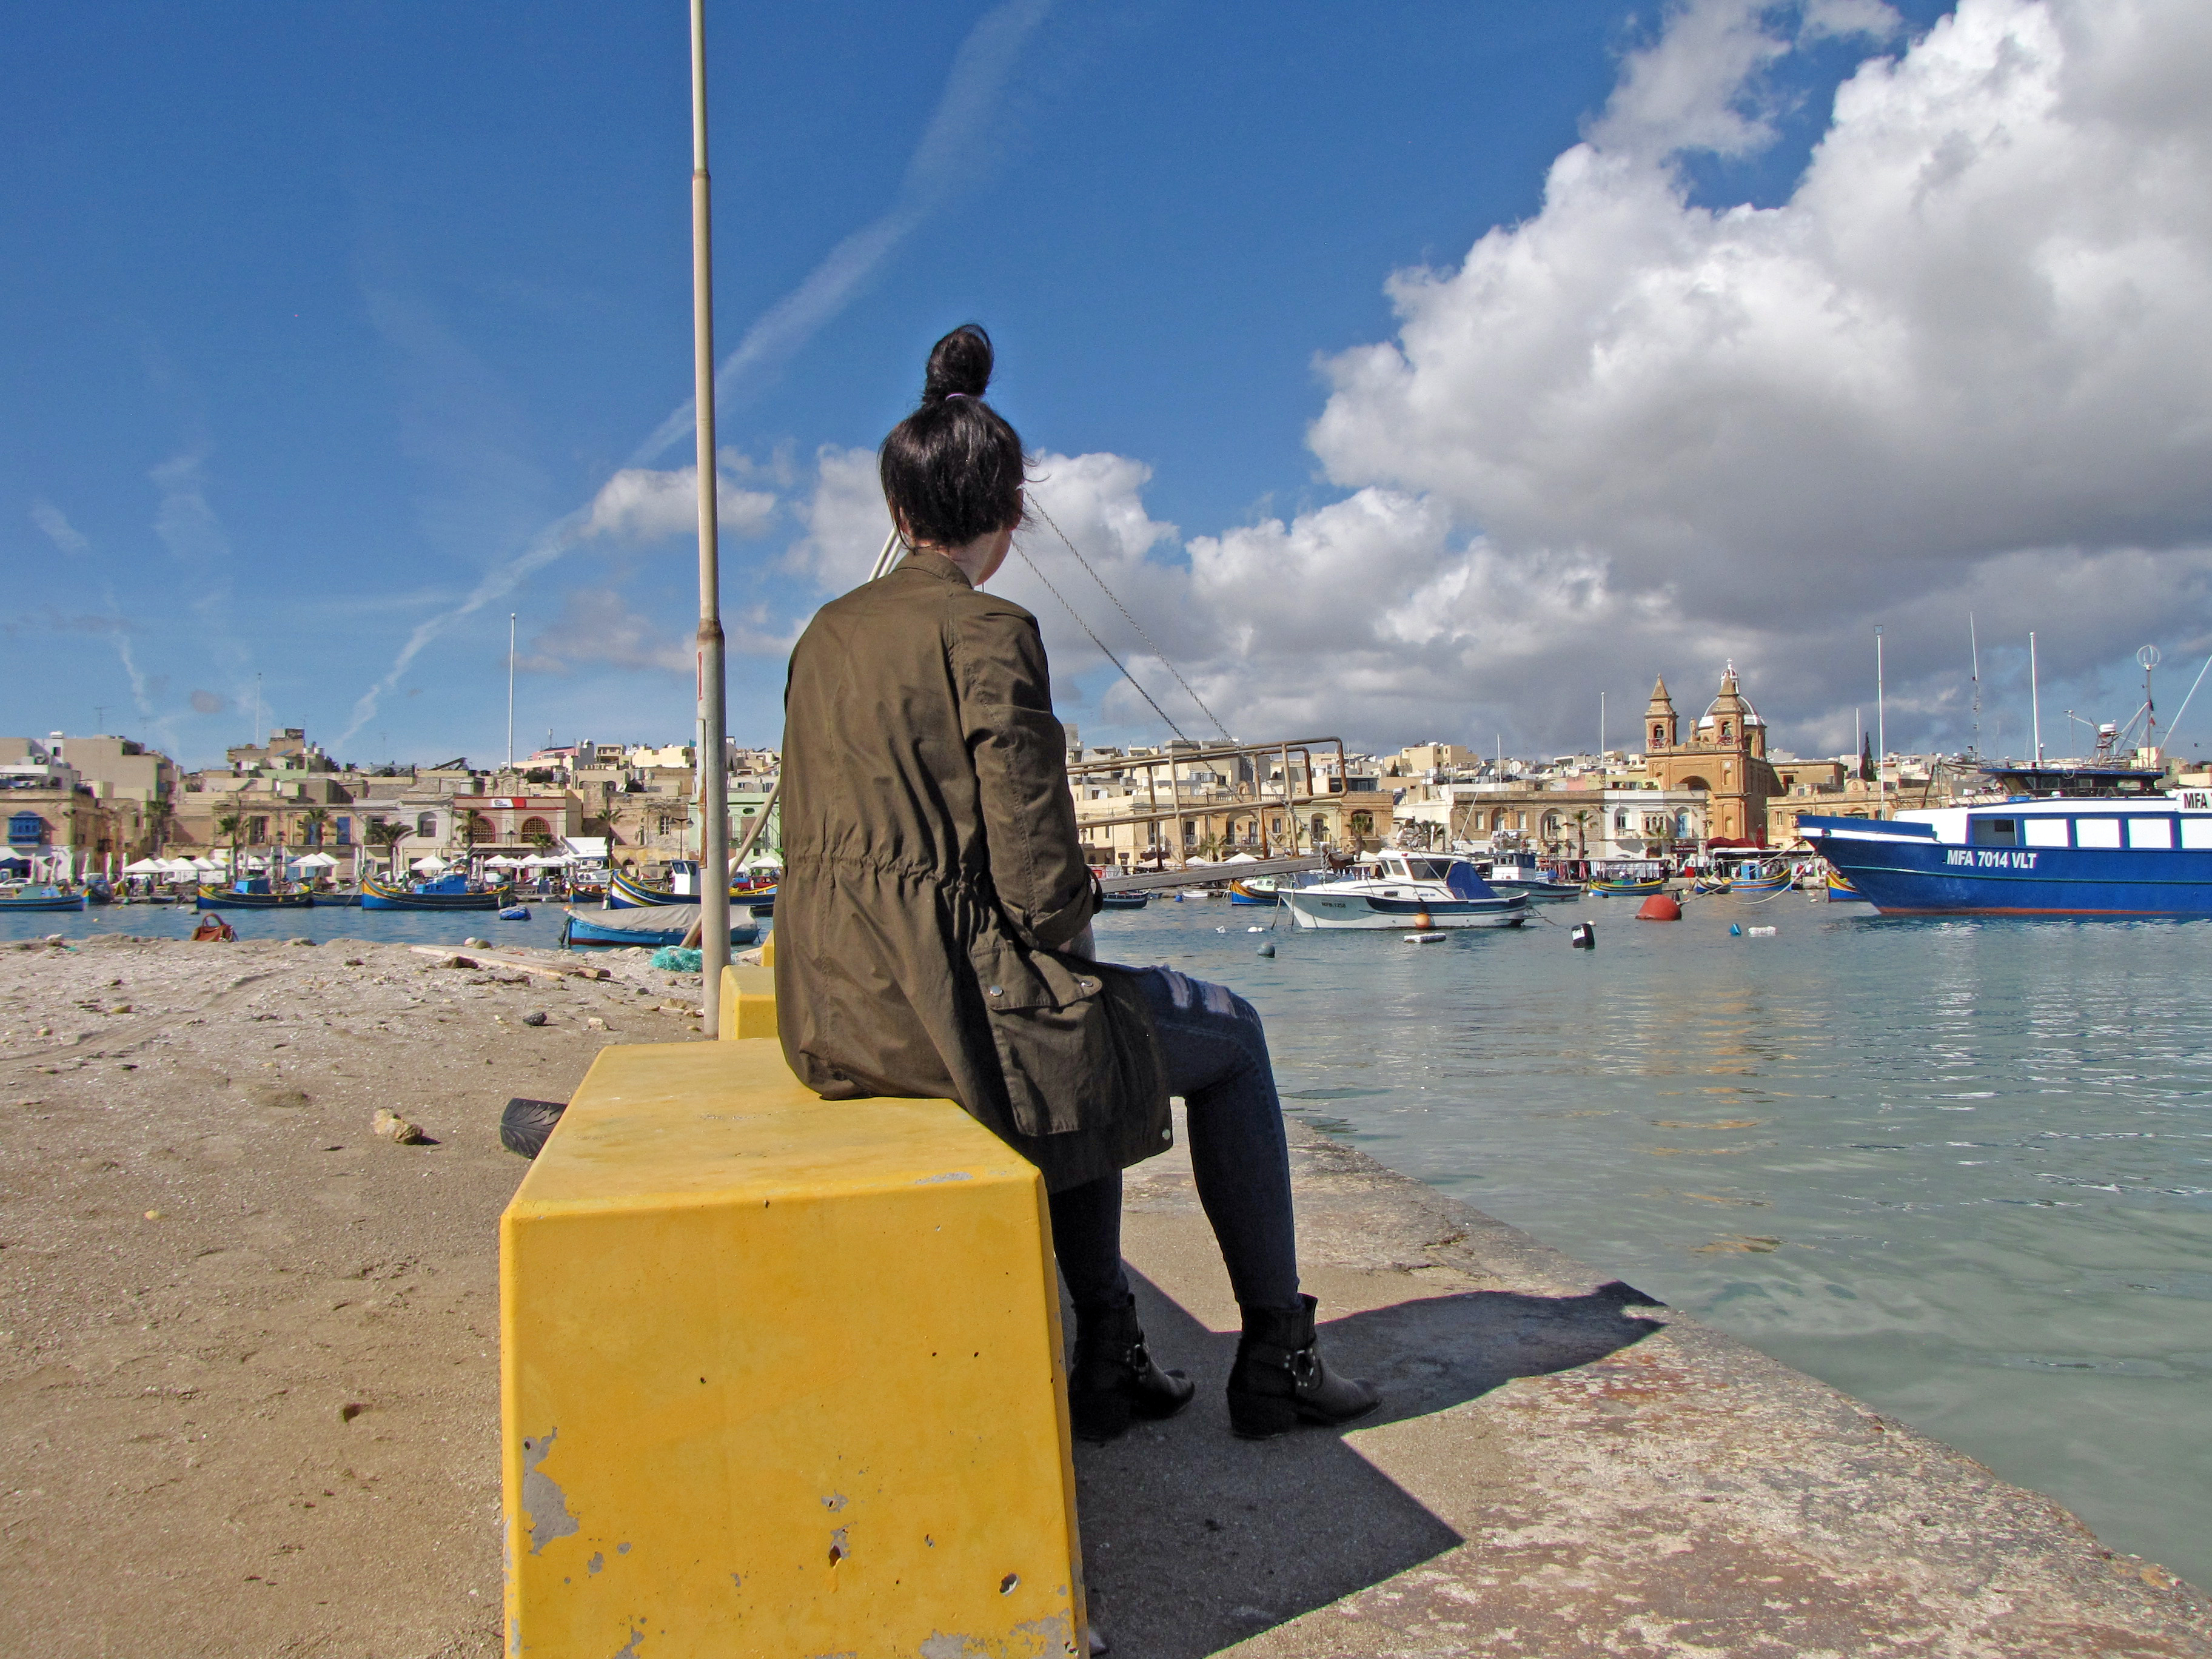 Traditional_Fishing_Village_Marsaxlokk_Malta